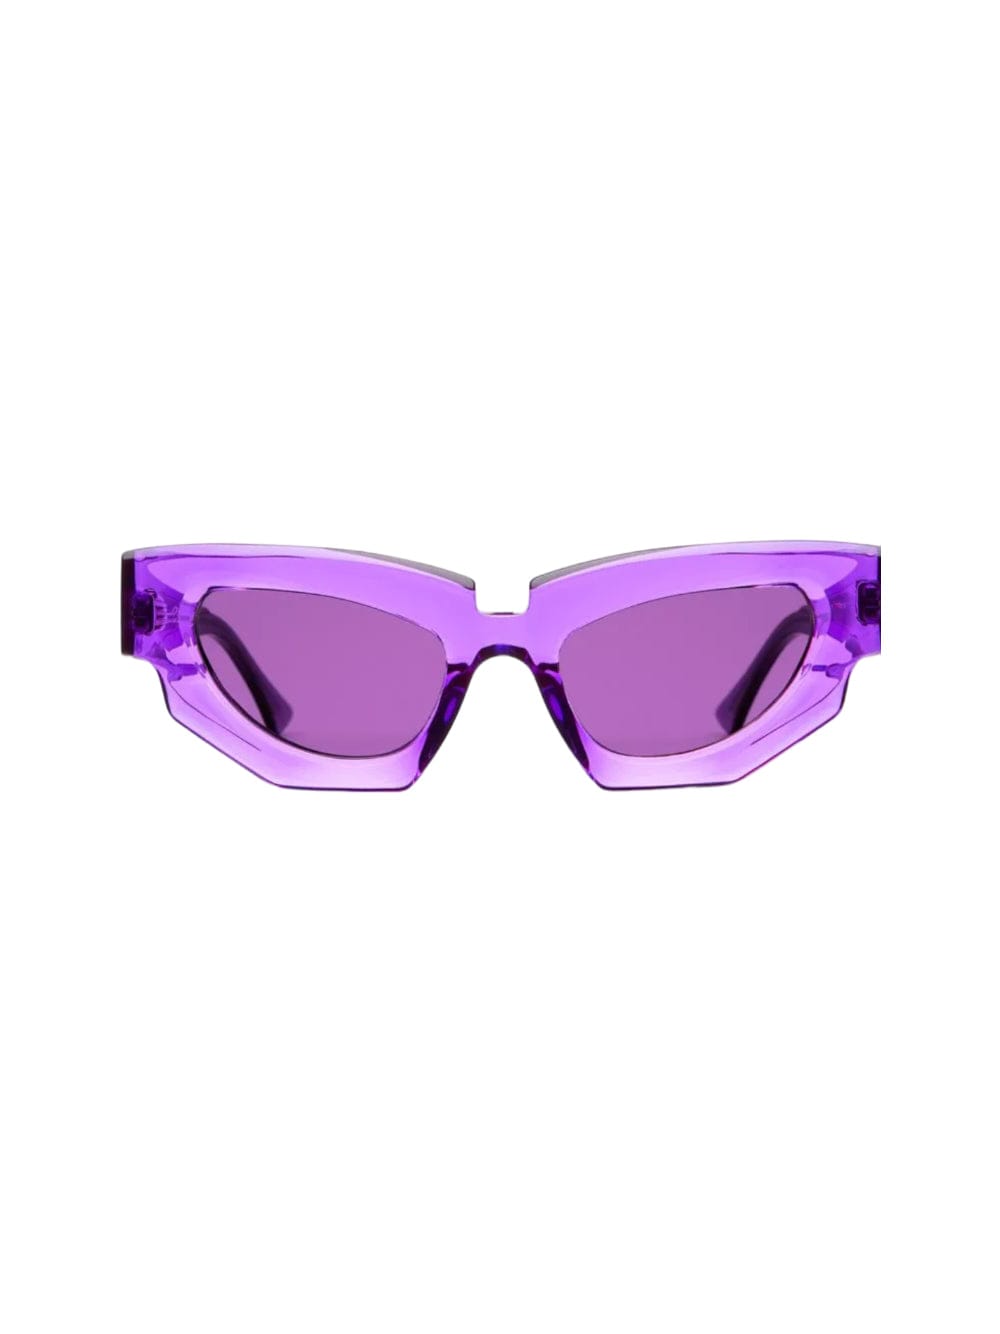 Shop Kuboraum Maske F5 Sunglasses